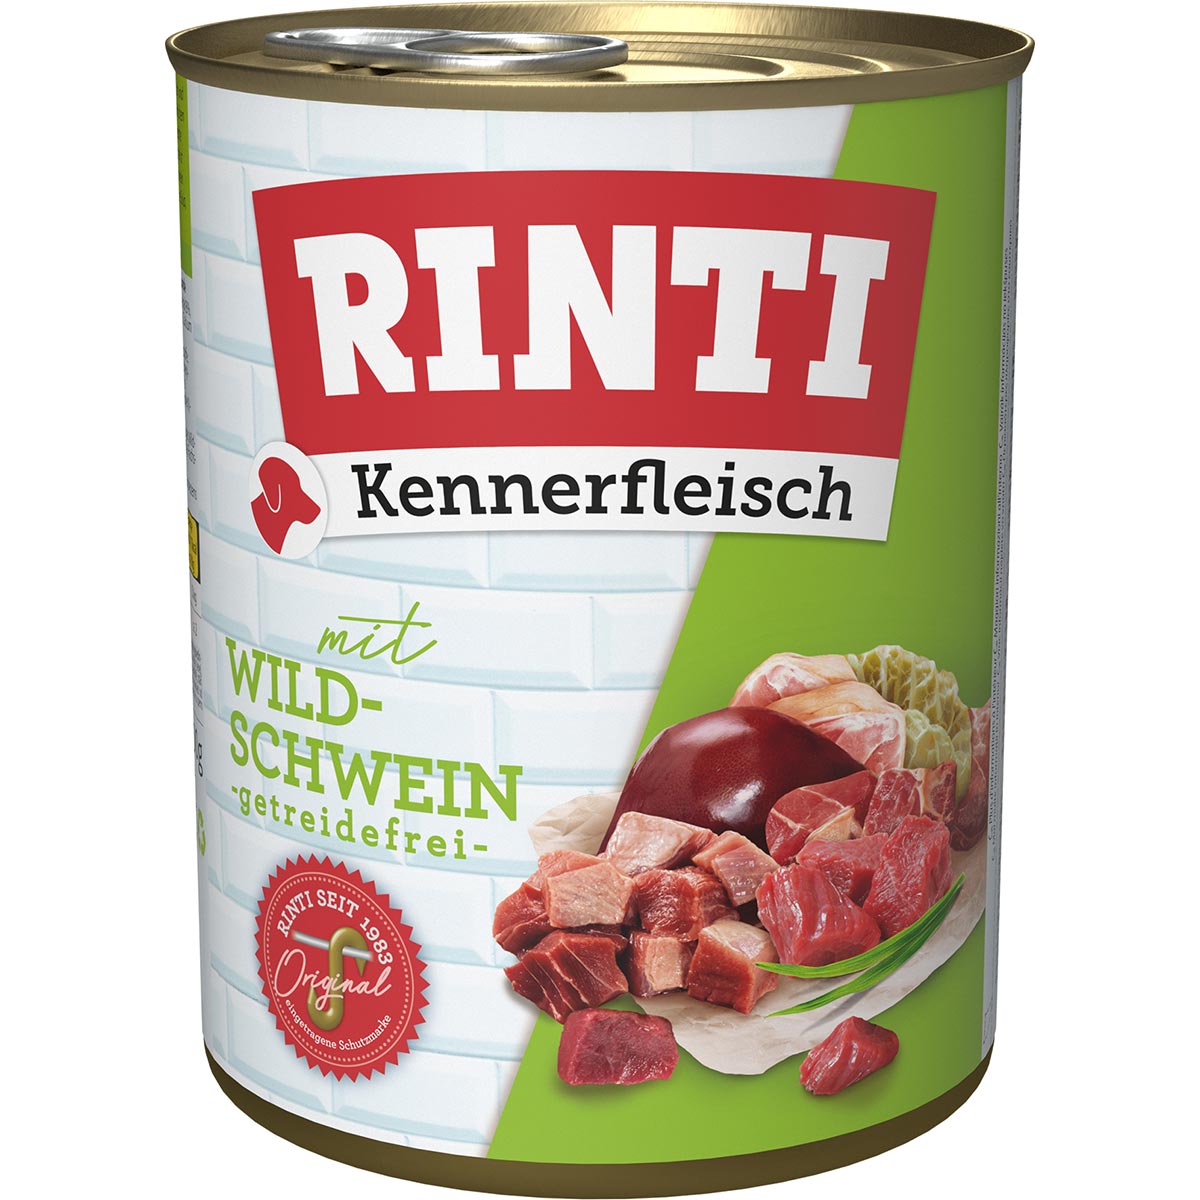 Rinti Kennerfleisch Wildschwein 12x800g